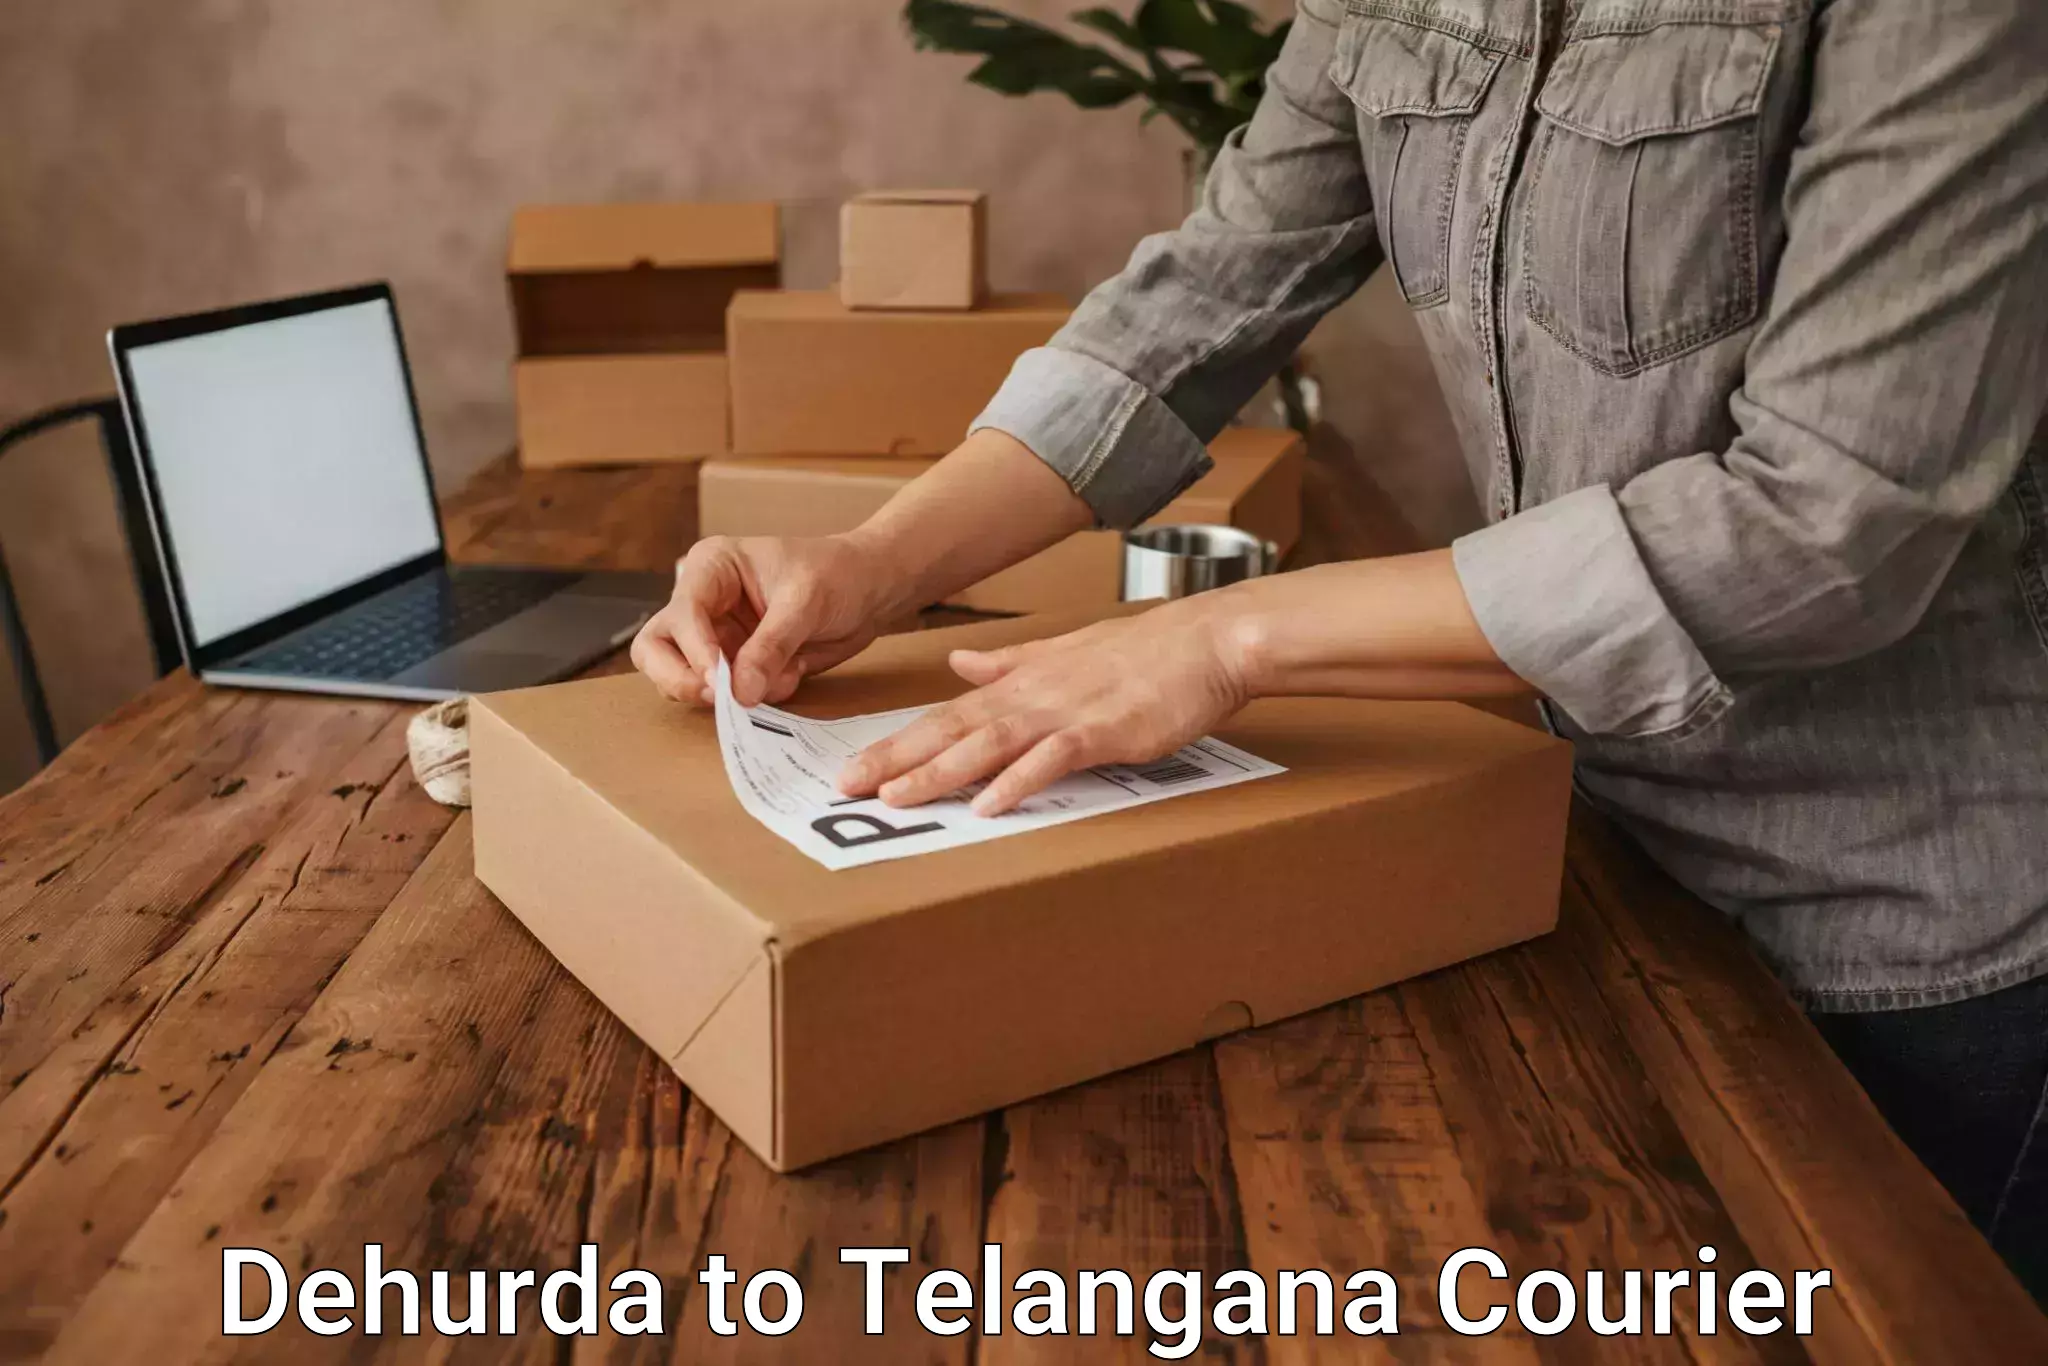 Quality courier services Dehurda to Trimulgherry